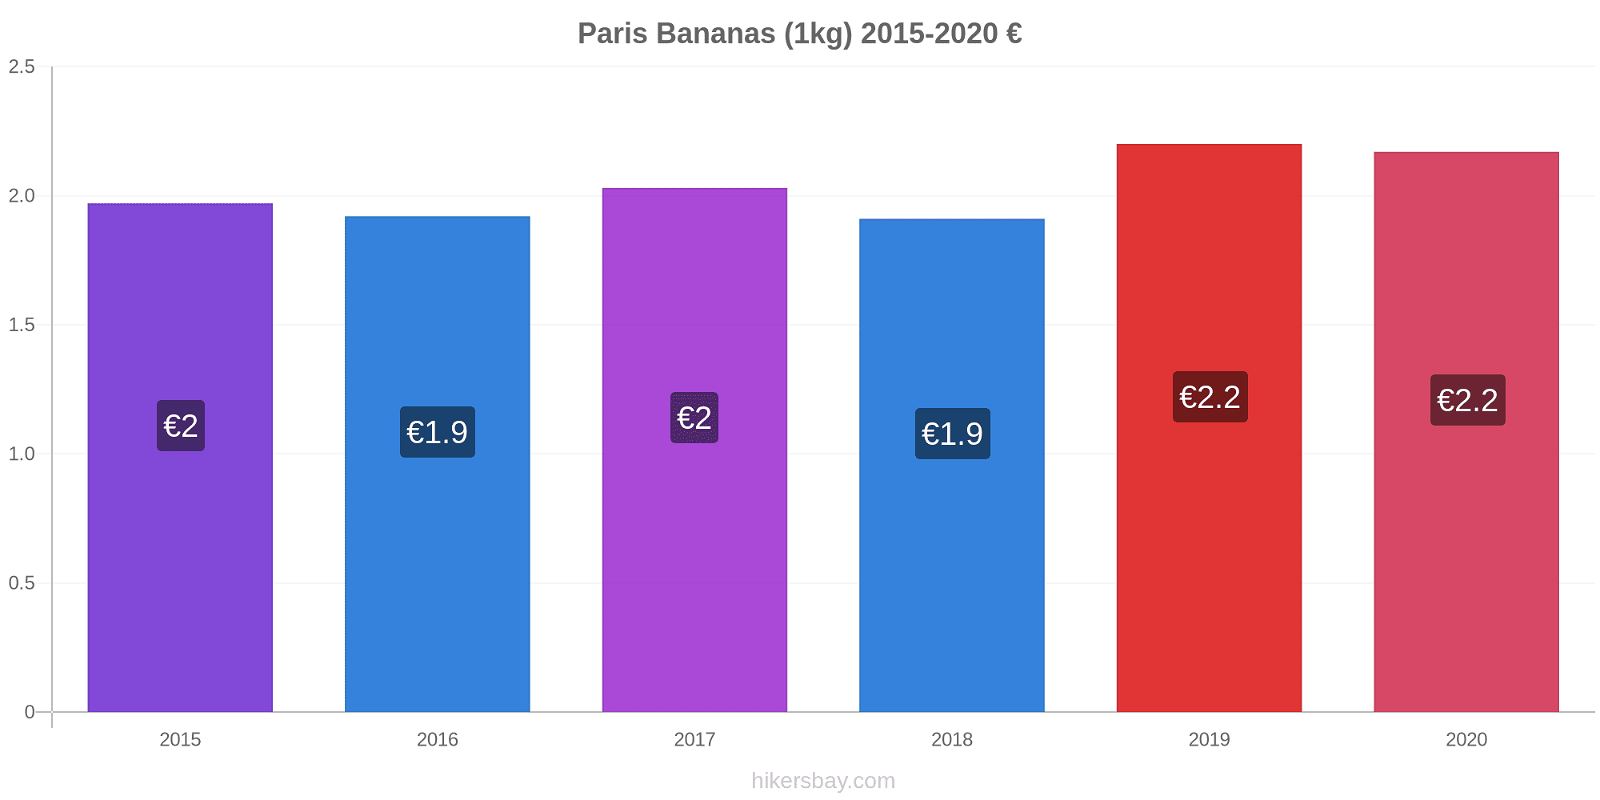 Paris variação de preço Banana (1kg) hikersbay.com